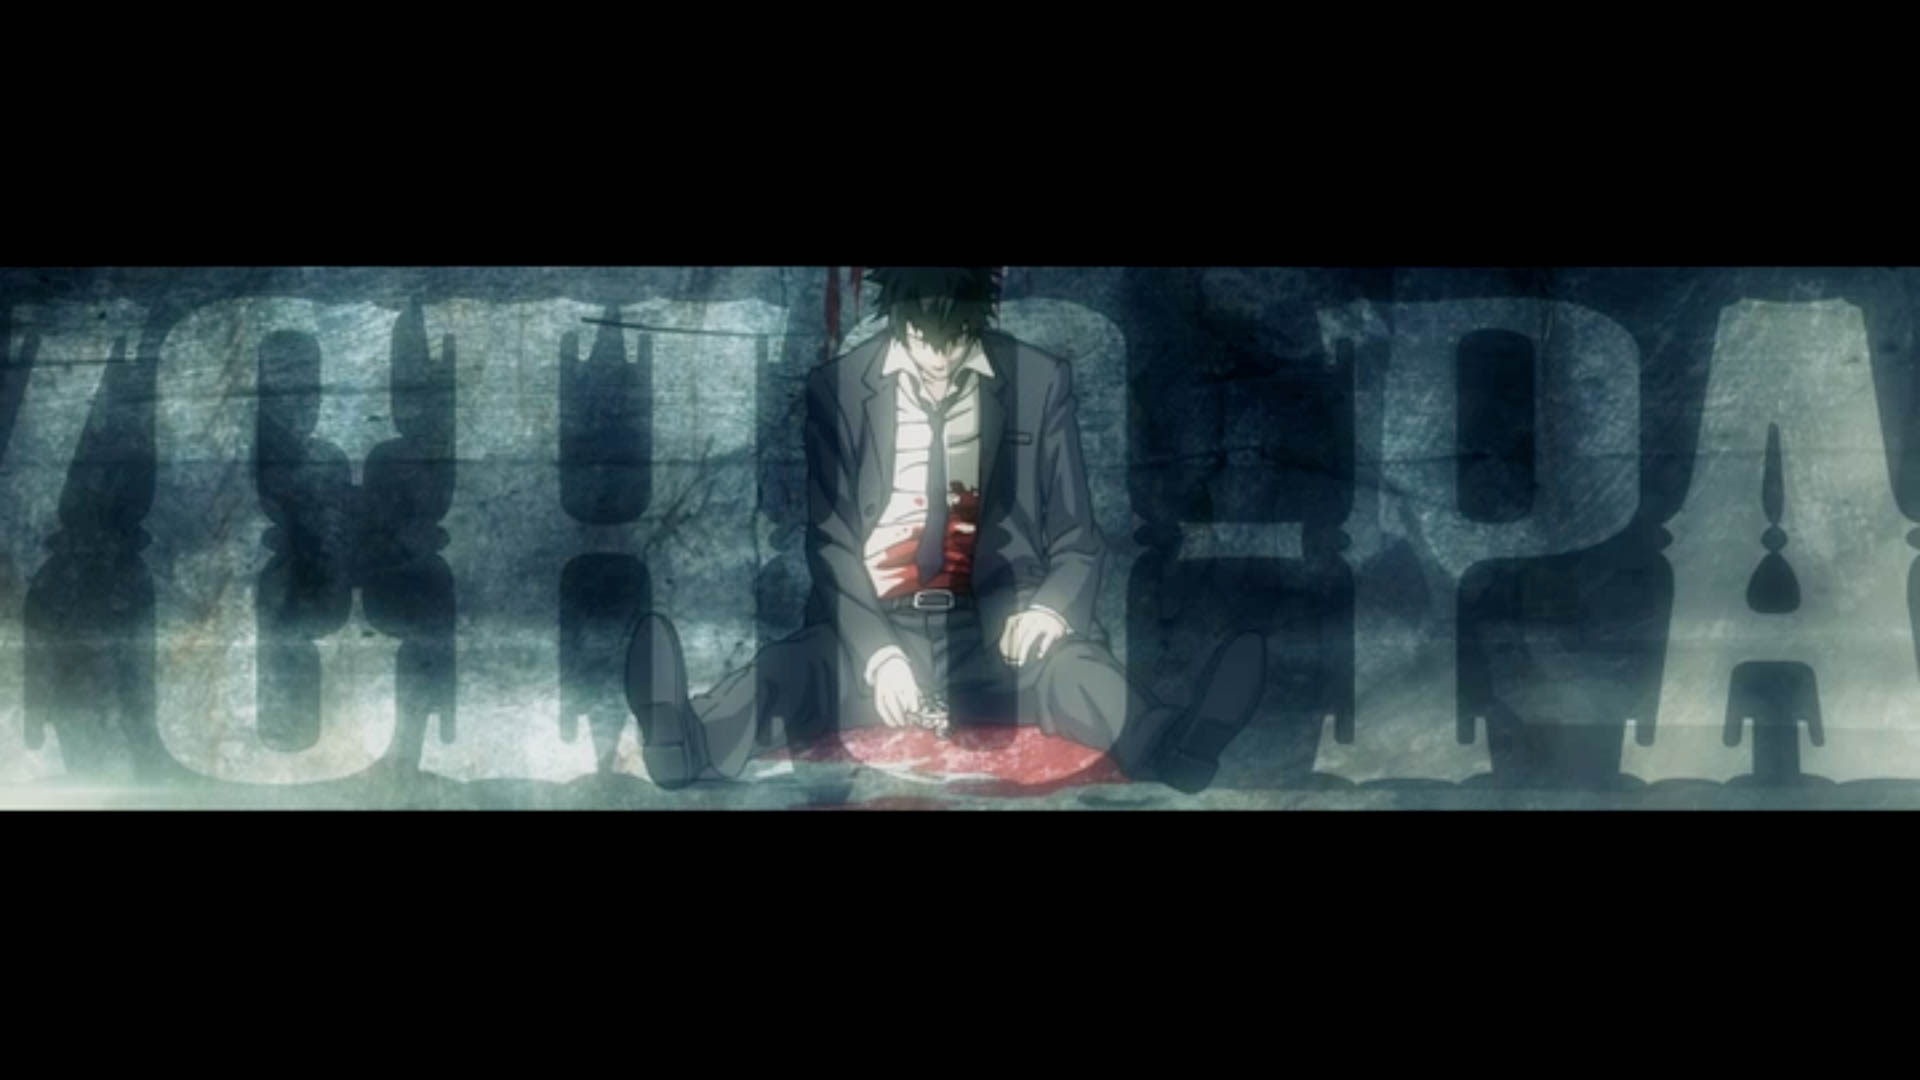 Tvアニメ Psycho Pass サイコパス 第12話 第22話opテロップワーク 10gauge